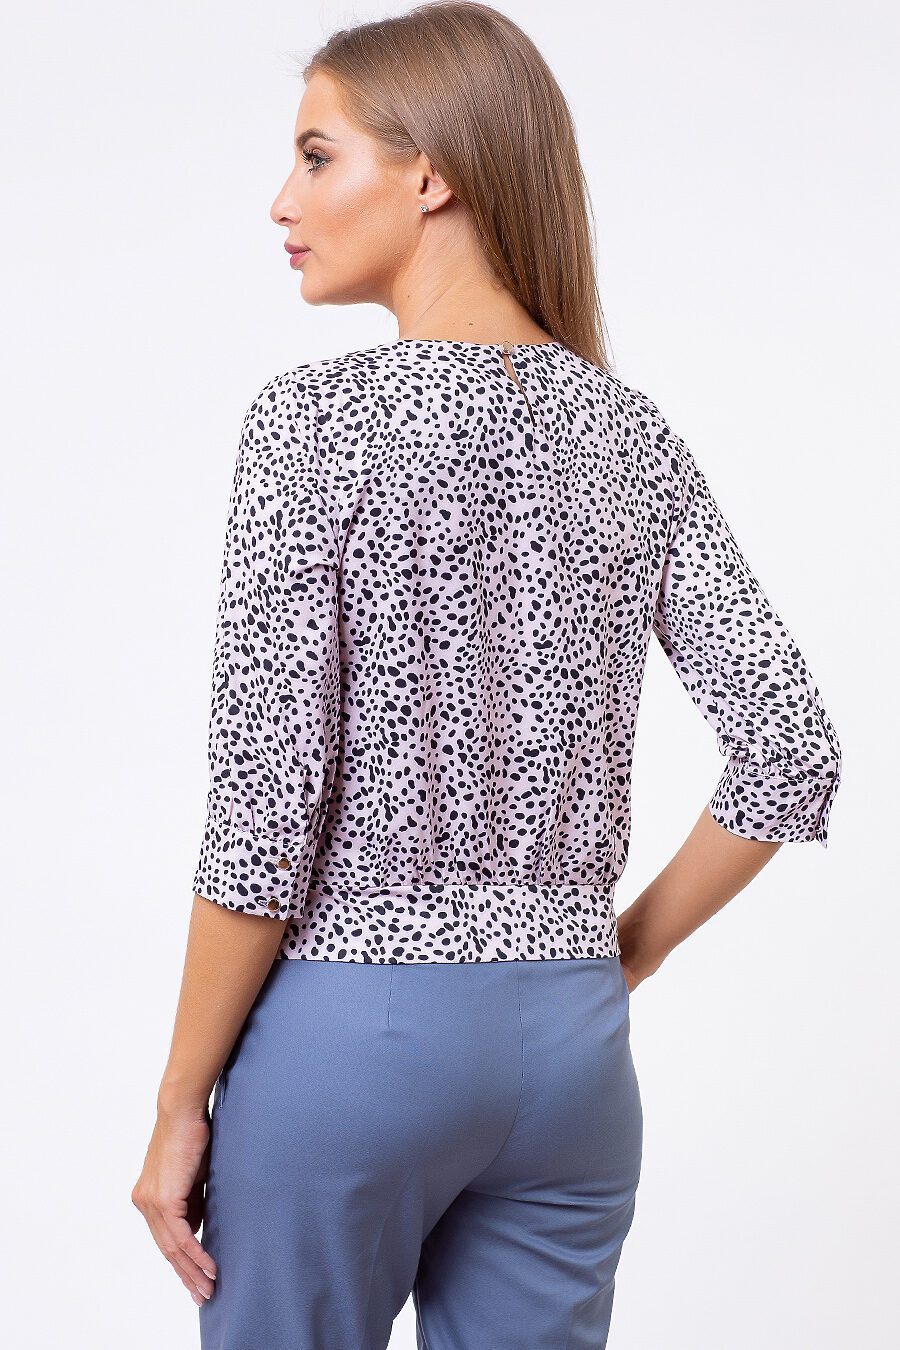 Блуза TUTACHI (125182), купить в Moyo.moda